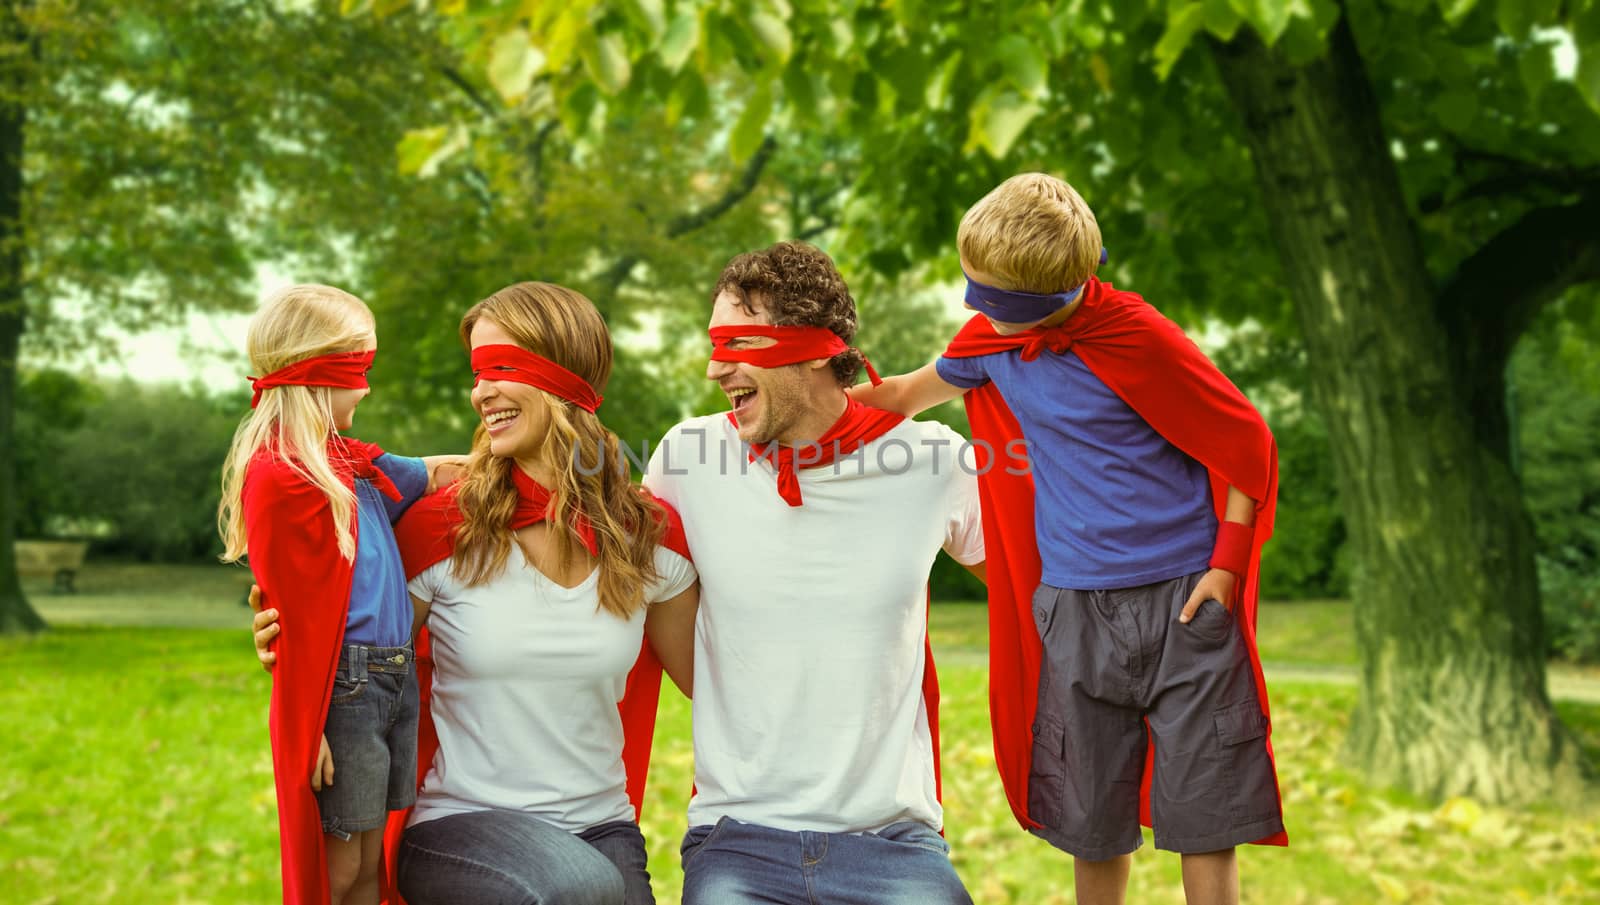 Family in superhero costume in park by Wavebreakmedia